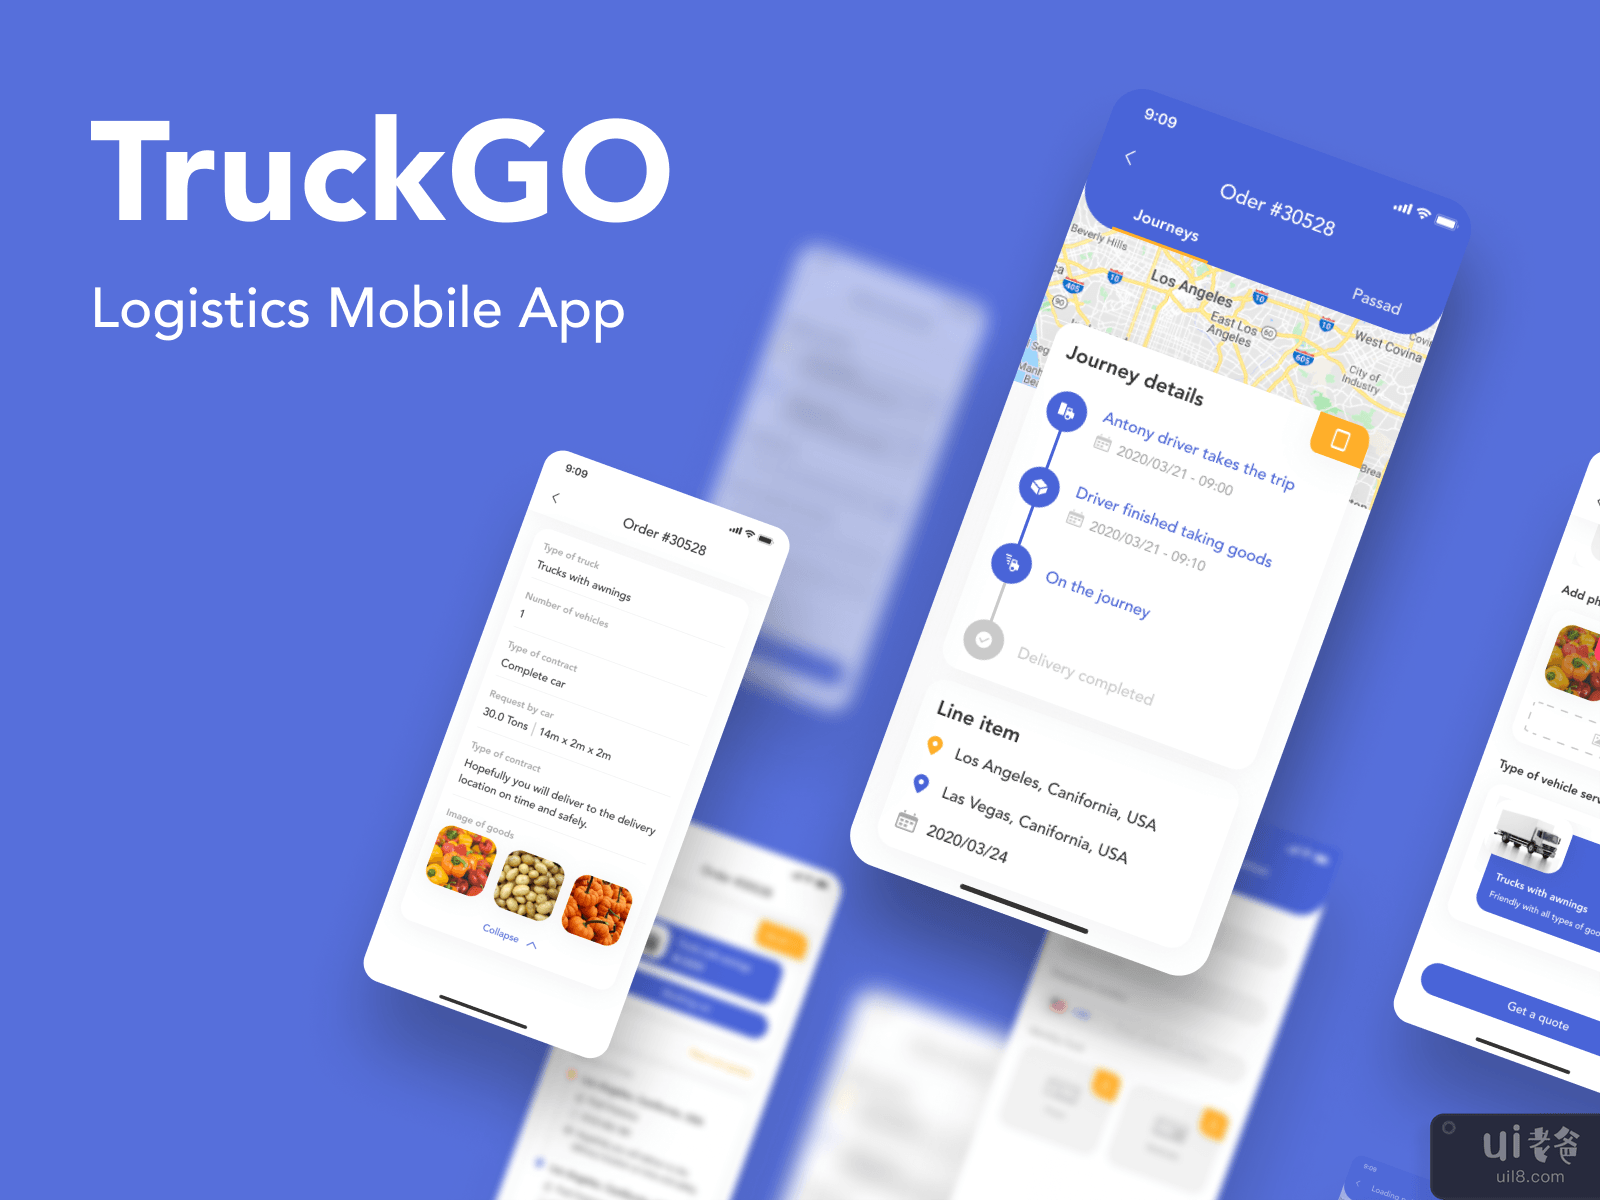 TruckGo - Logistics Mobile App #8